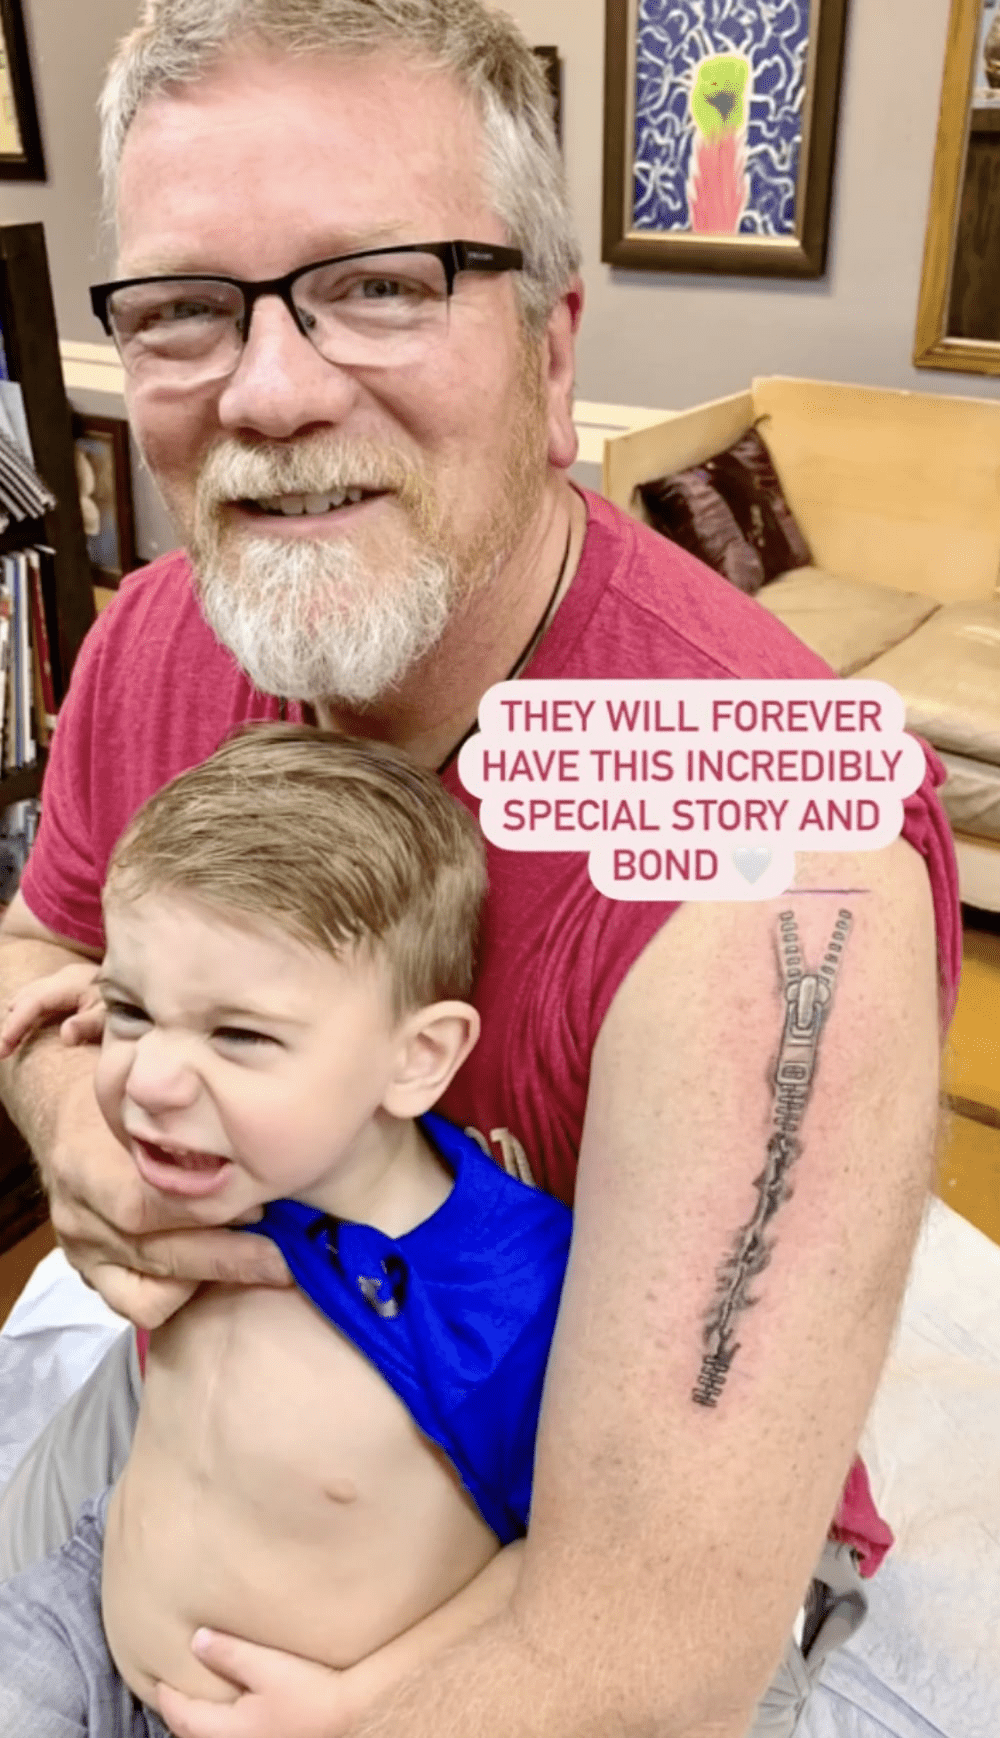 外公刻意纹上与索耶疤痕相同的图案。（图片来源：Instagram@rebekahsfamily）